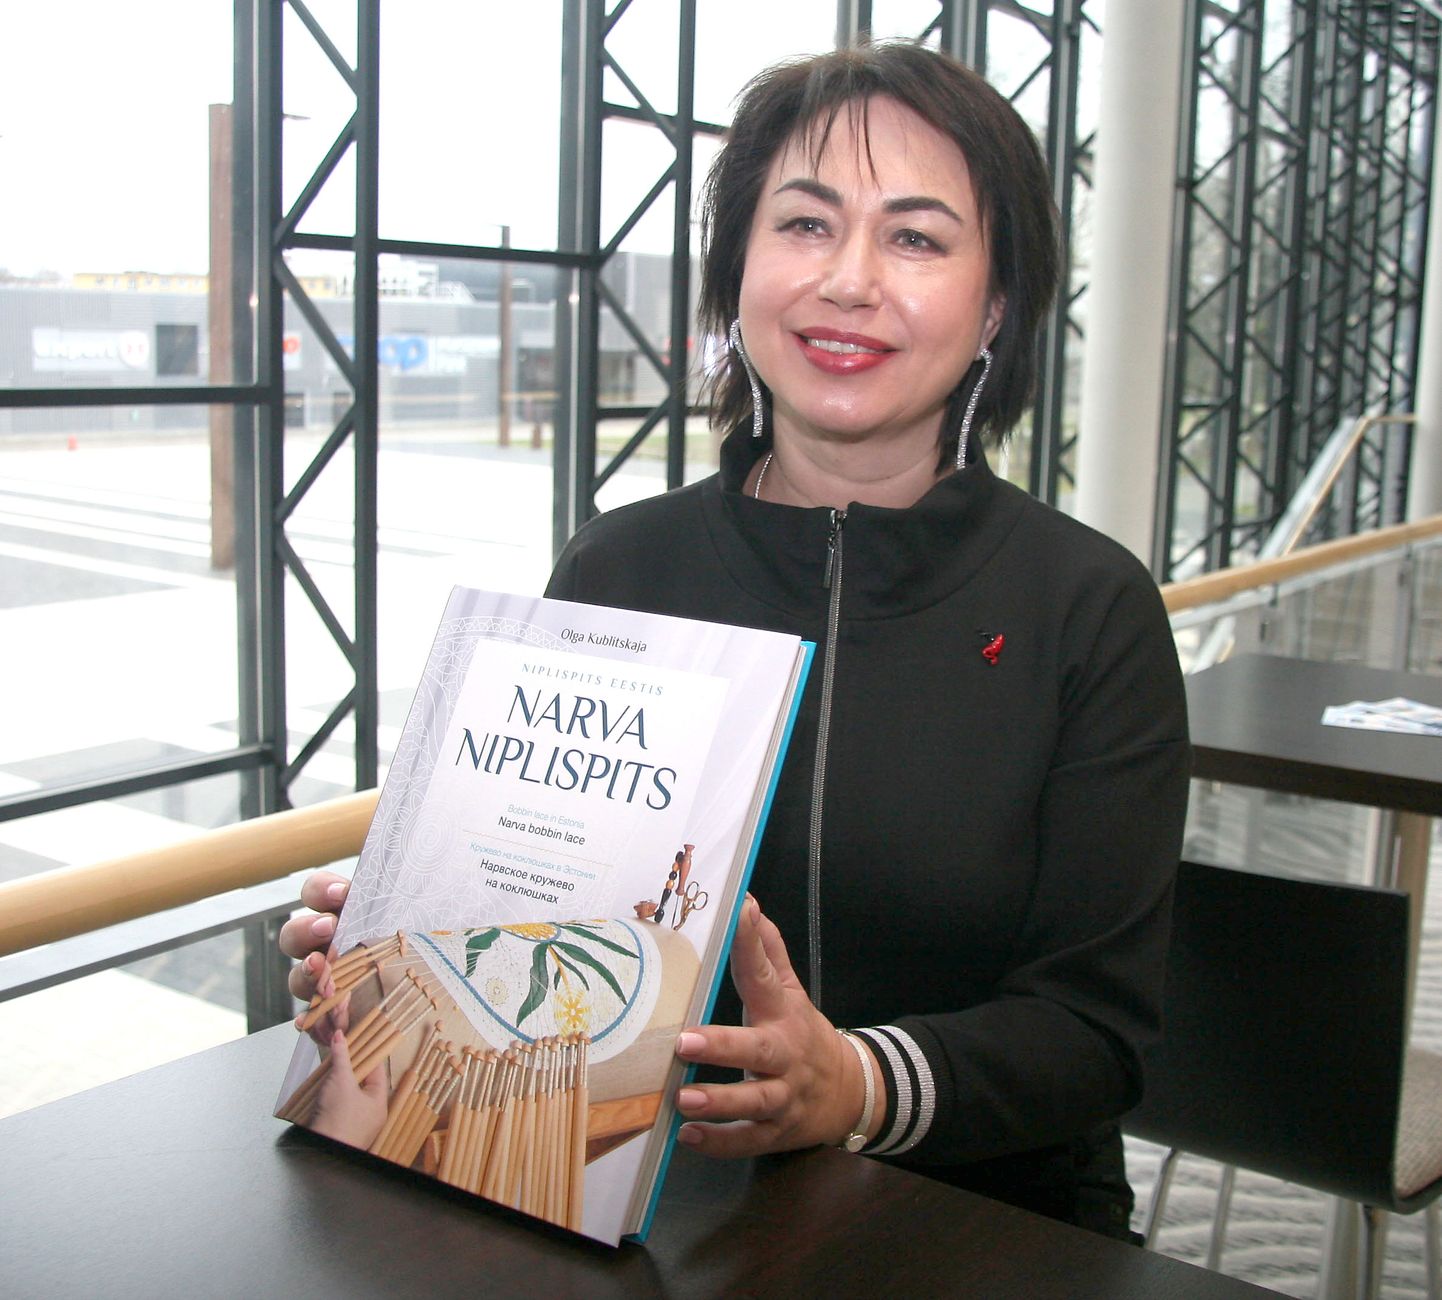 Kolm aastat tagasi esitles Olga Kublitskaja Jõhvis oma raamatut, mis kõneleb pitsipunumise kunsti tekkest ja arengust Euroopas ja Eestis. Nüüd tutvustab ta oma järjekordset uut pitsikollektsiooni.